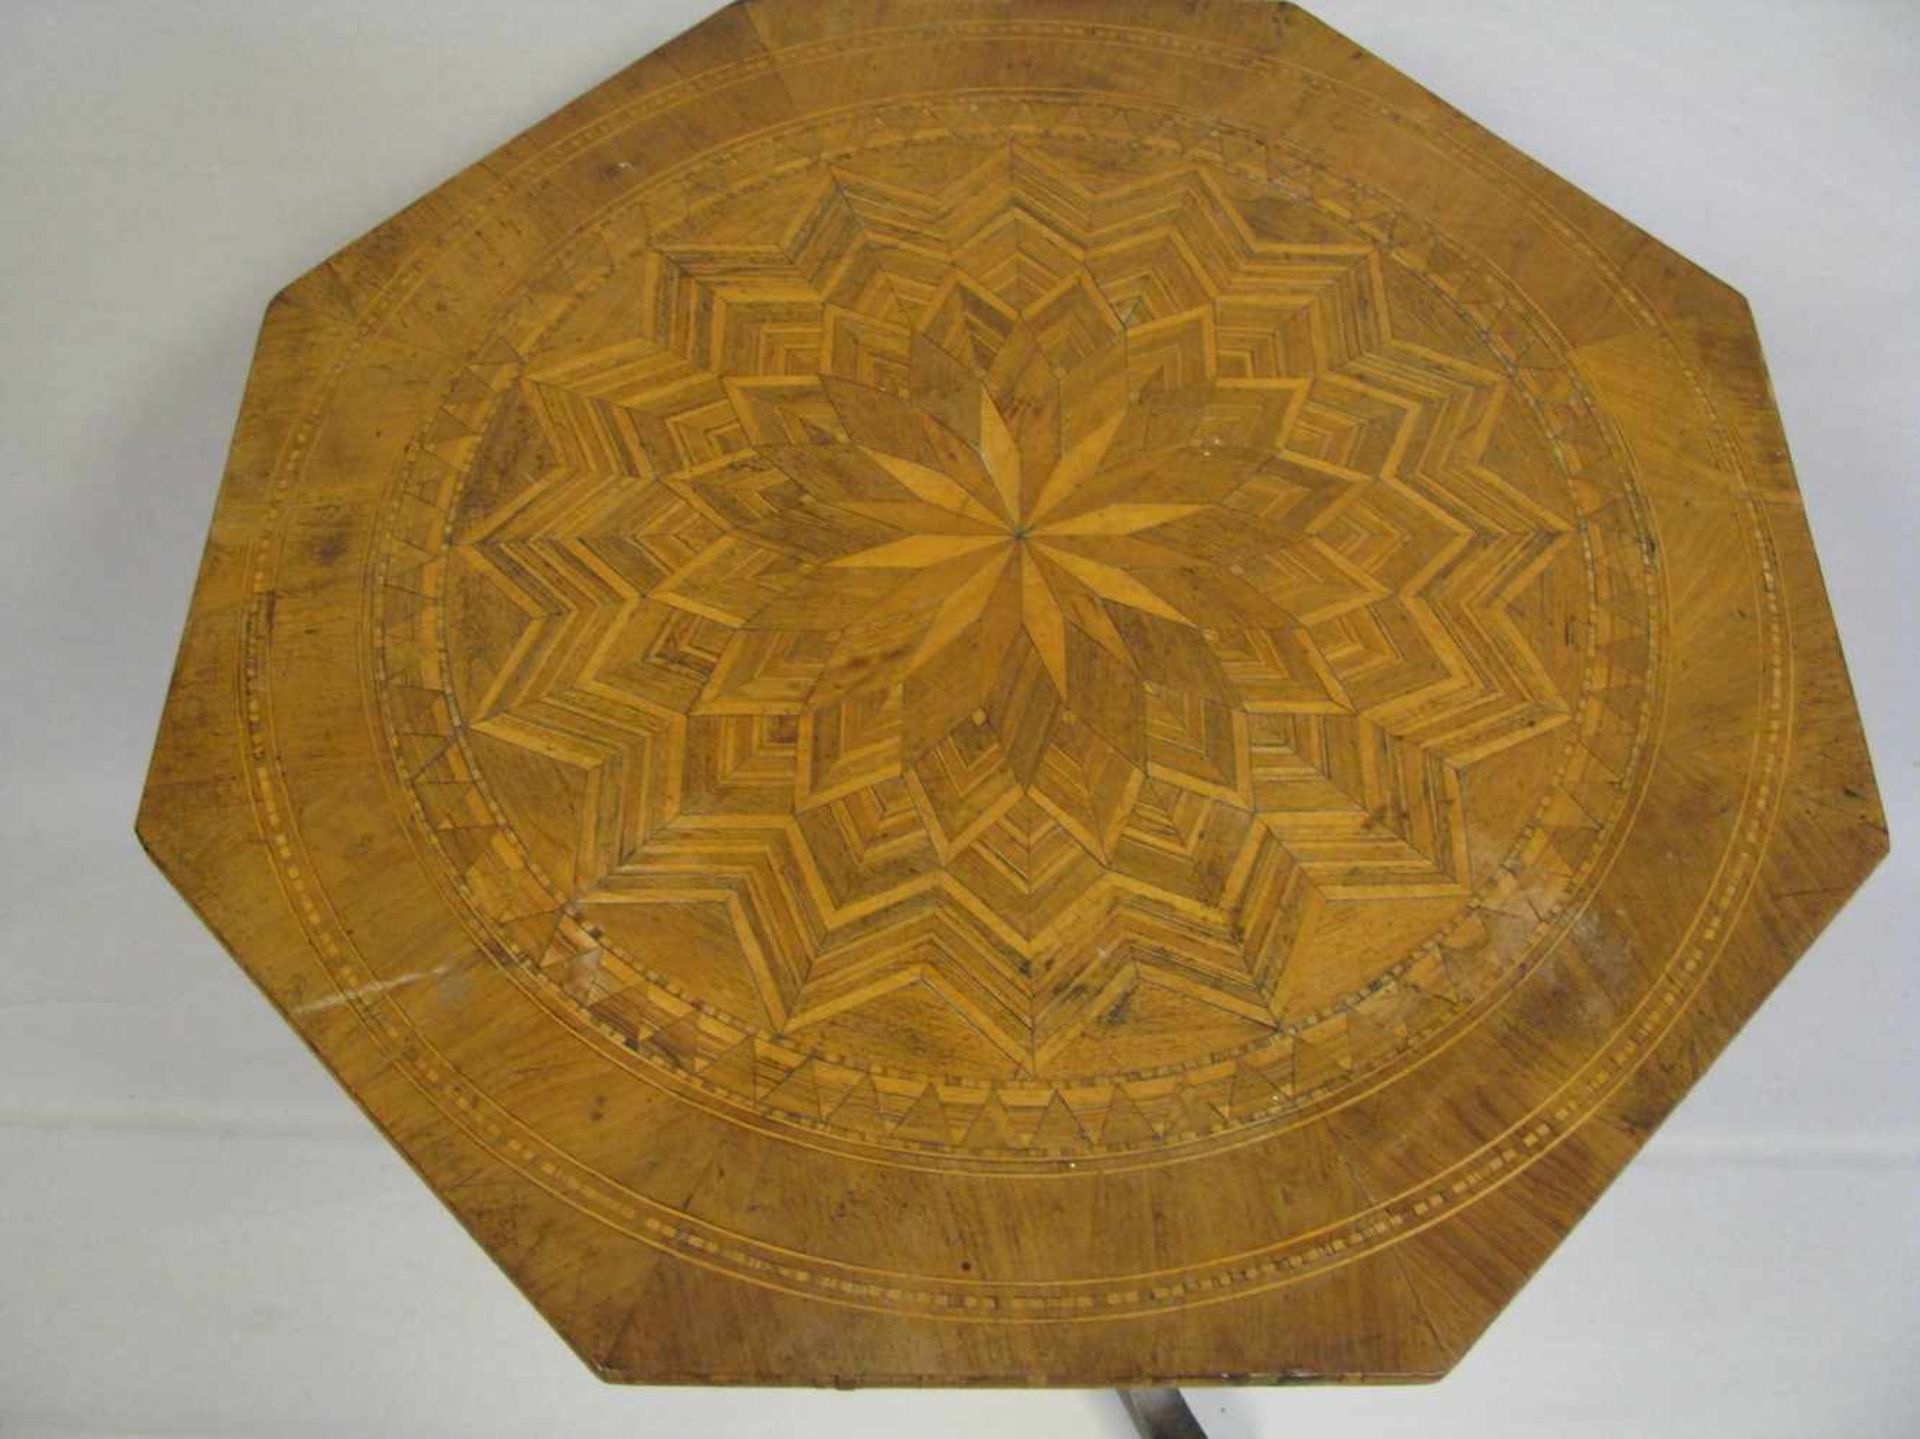 Beistelltisch, 19. Jahrhundert, reiche Edelholzintarsien, 8-eckige Platte, rest.bed., h 73,5 cm, d - Image 2 of 2